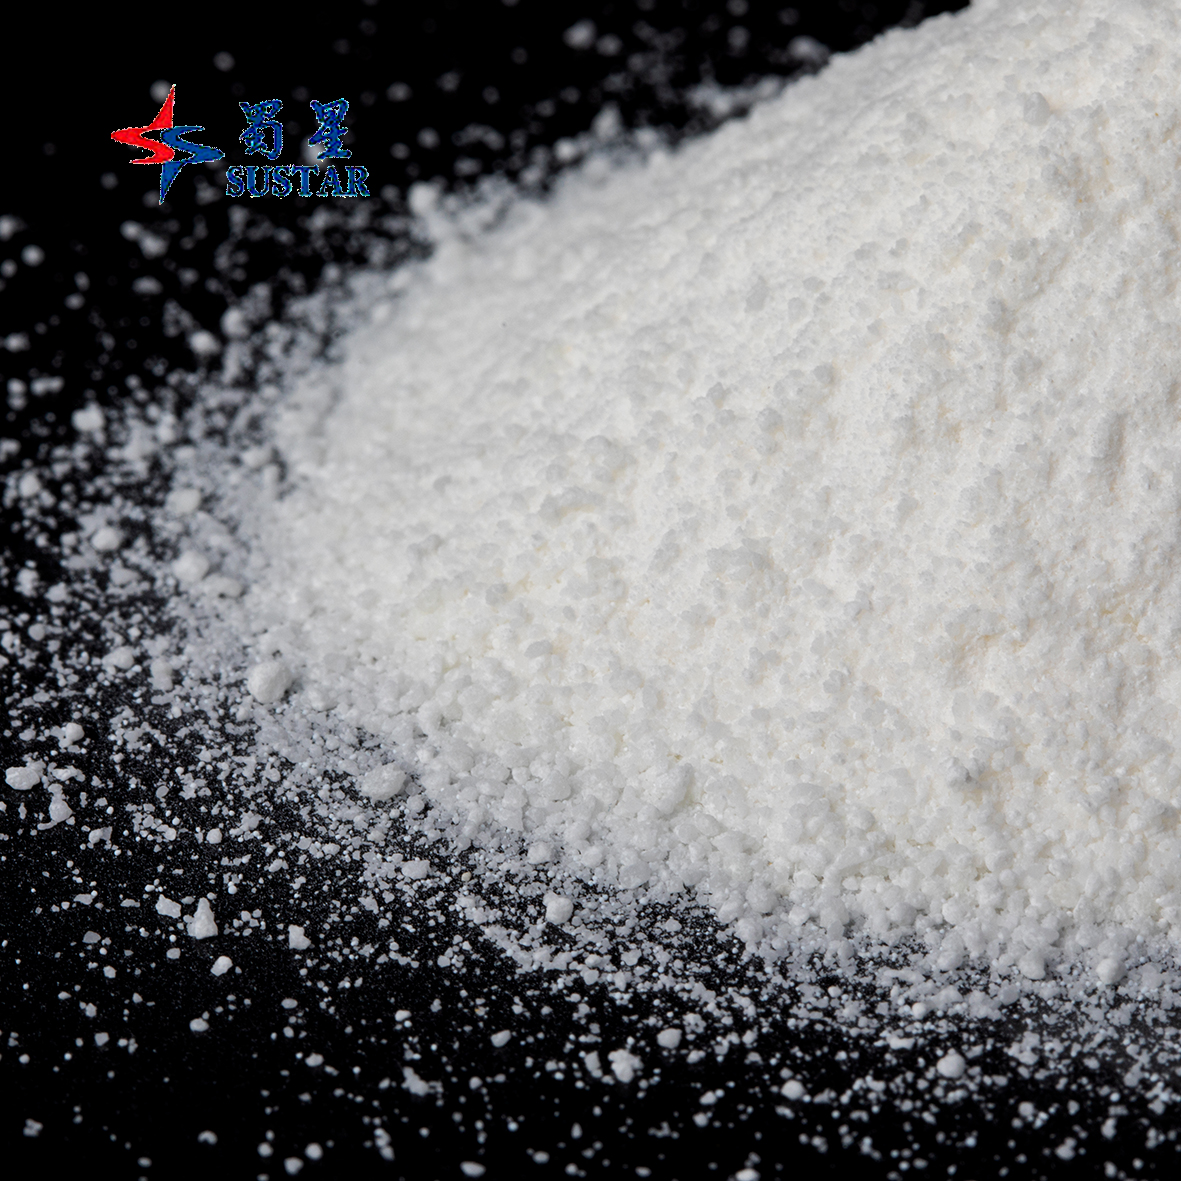 Aditivo para alimentación animal en polvo cristalino blanco compuesto complejo de zinc y quelato de glicina de zinc